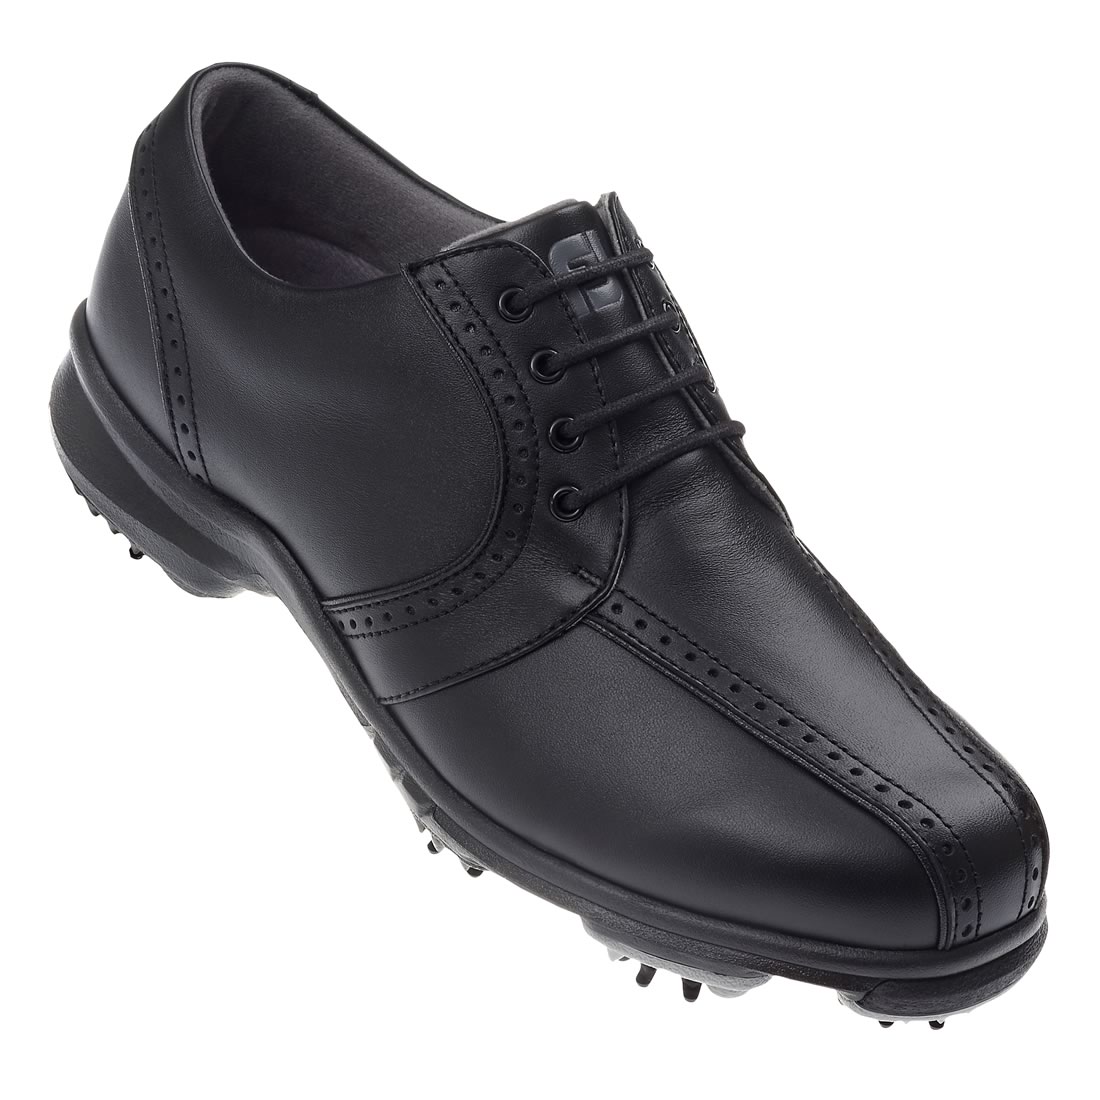 FootJoy Ladies Softjoys Golf Shoes Black #98422